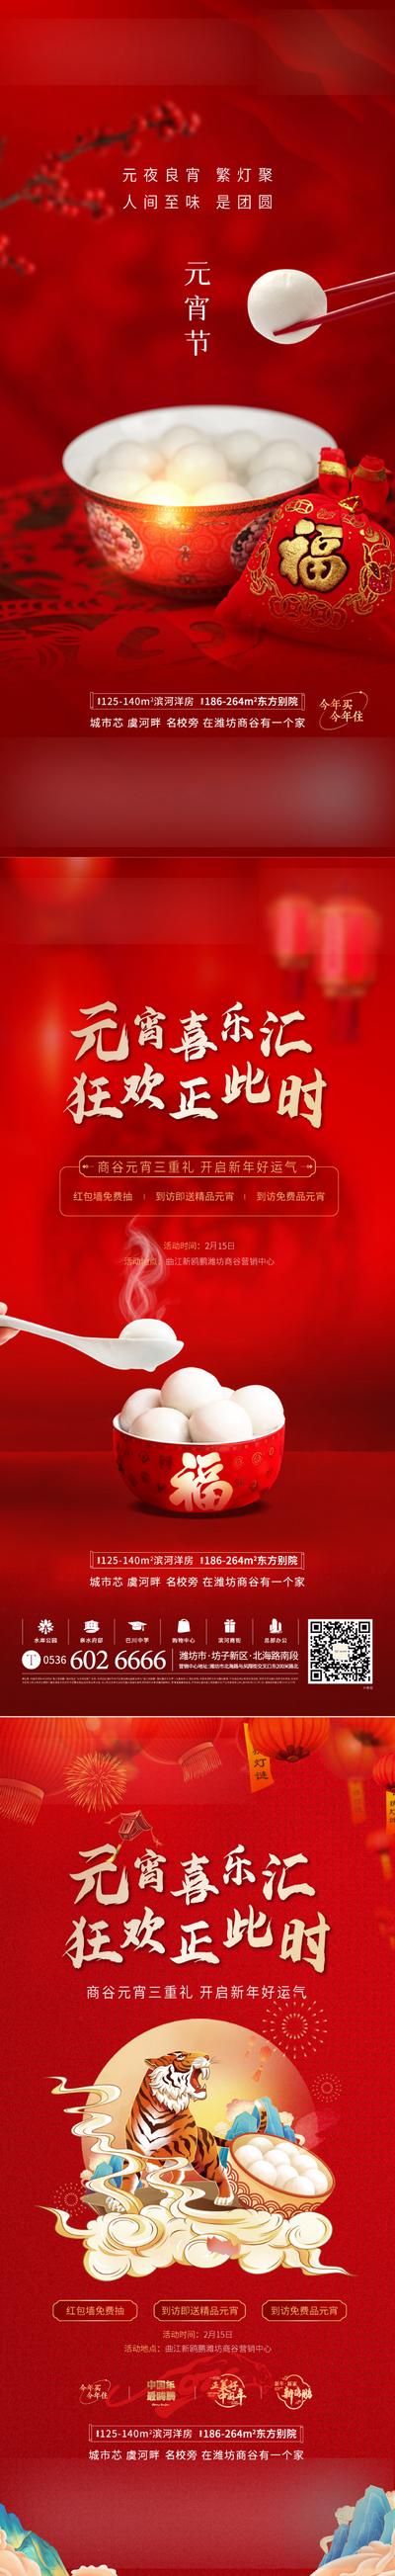 南门网 海报 地产 活动 元宵节 节日 红金 礼物 团圆